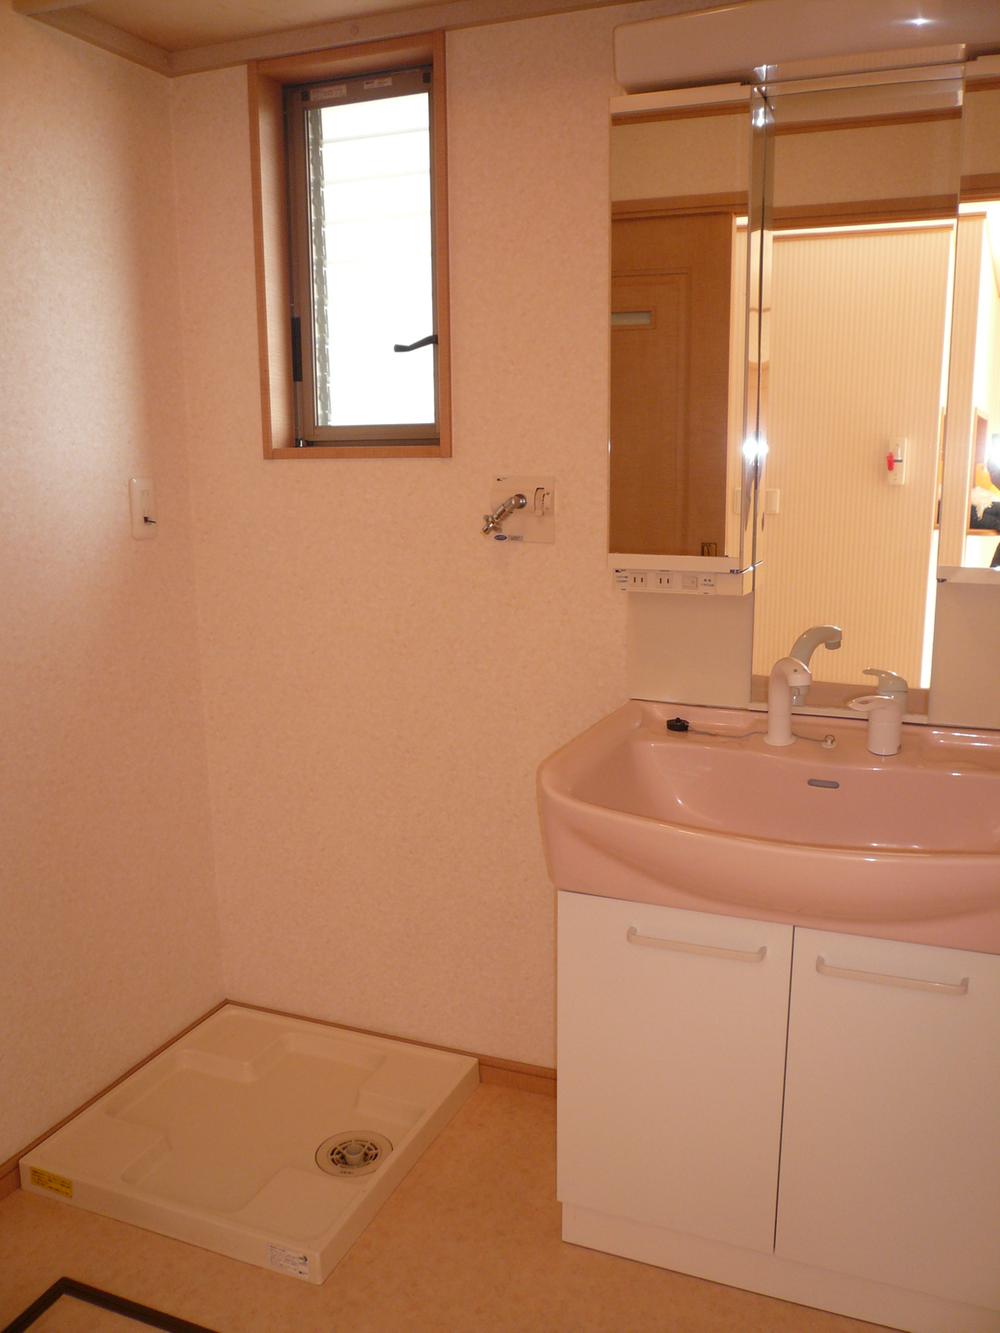 Wash basin, toilet. Second floor Washroom